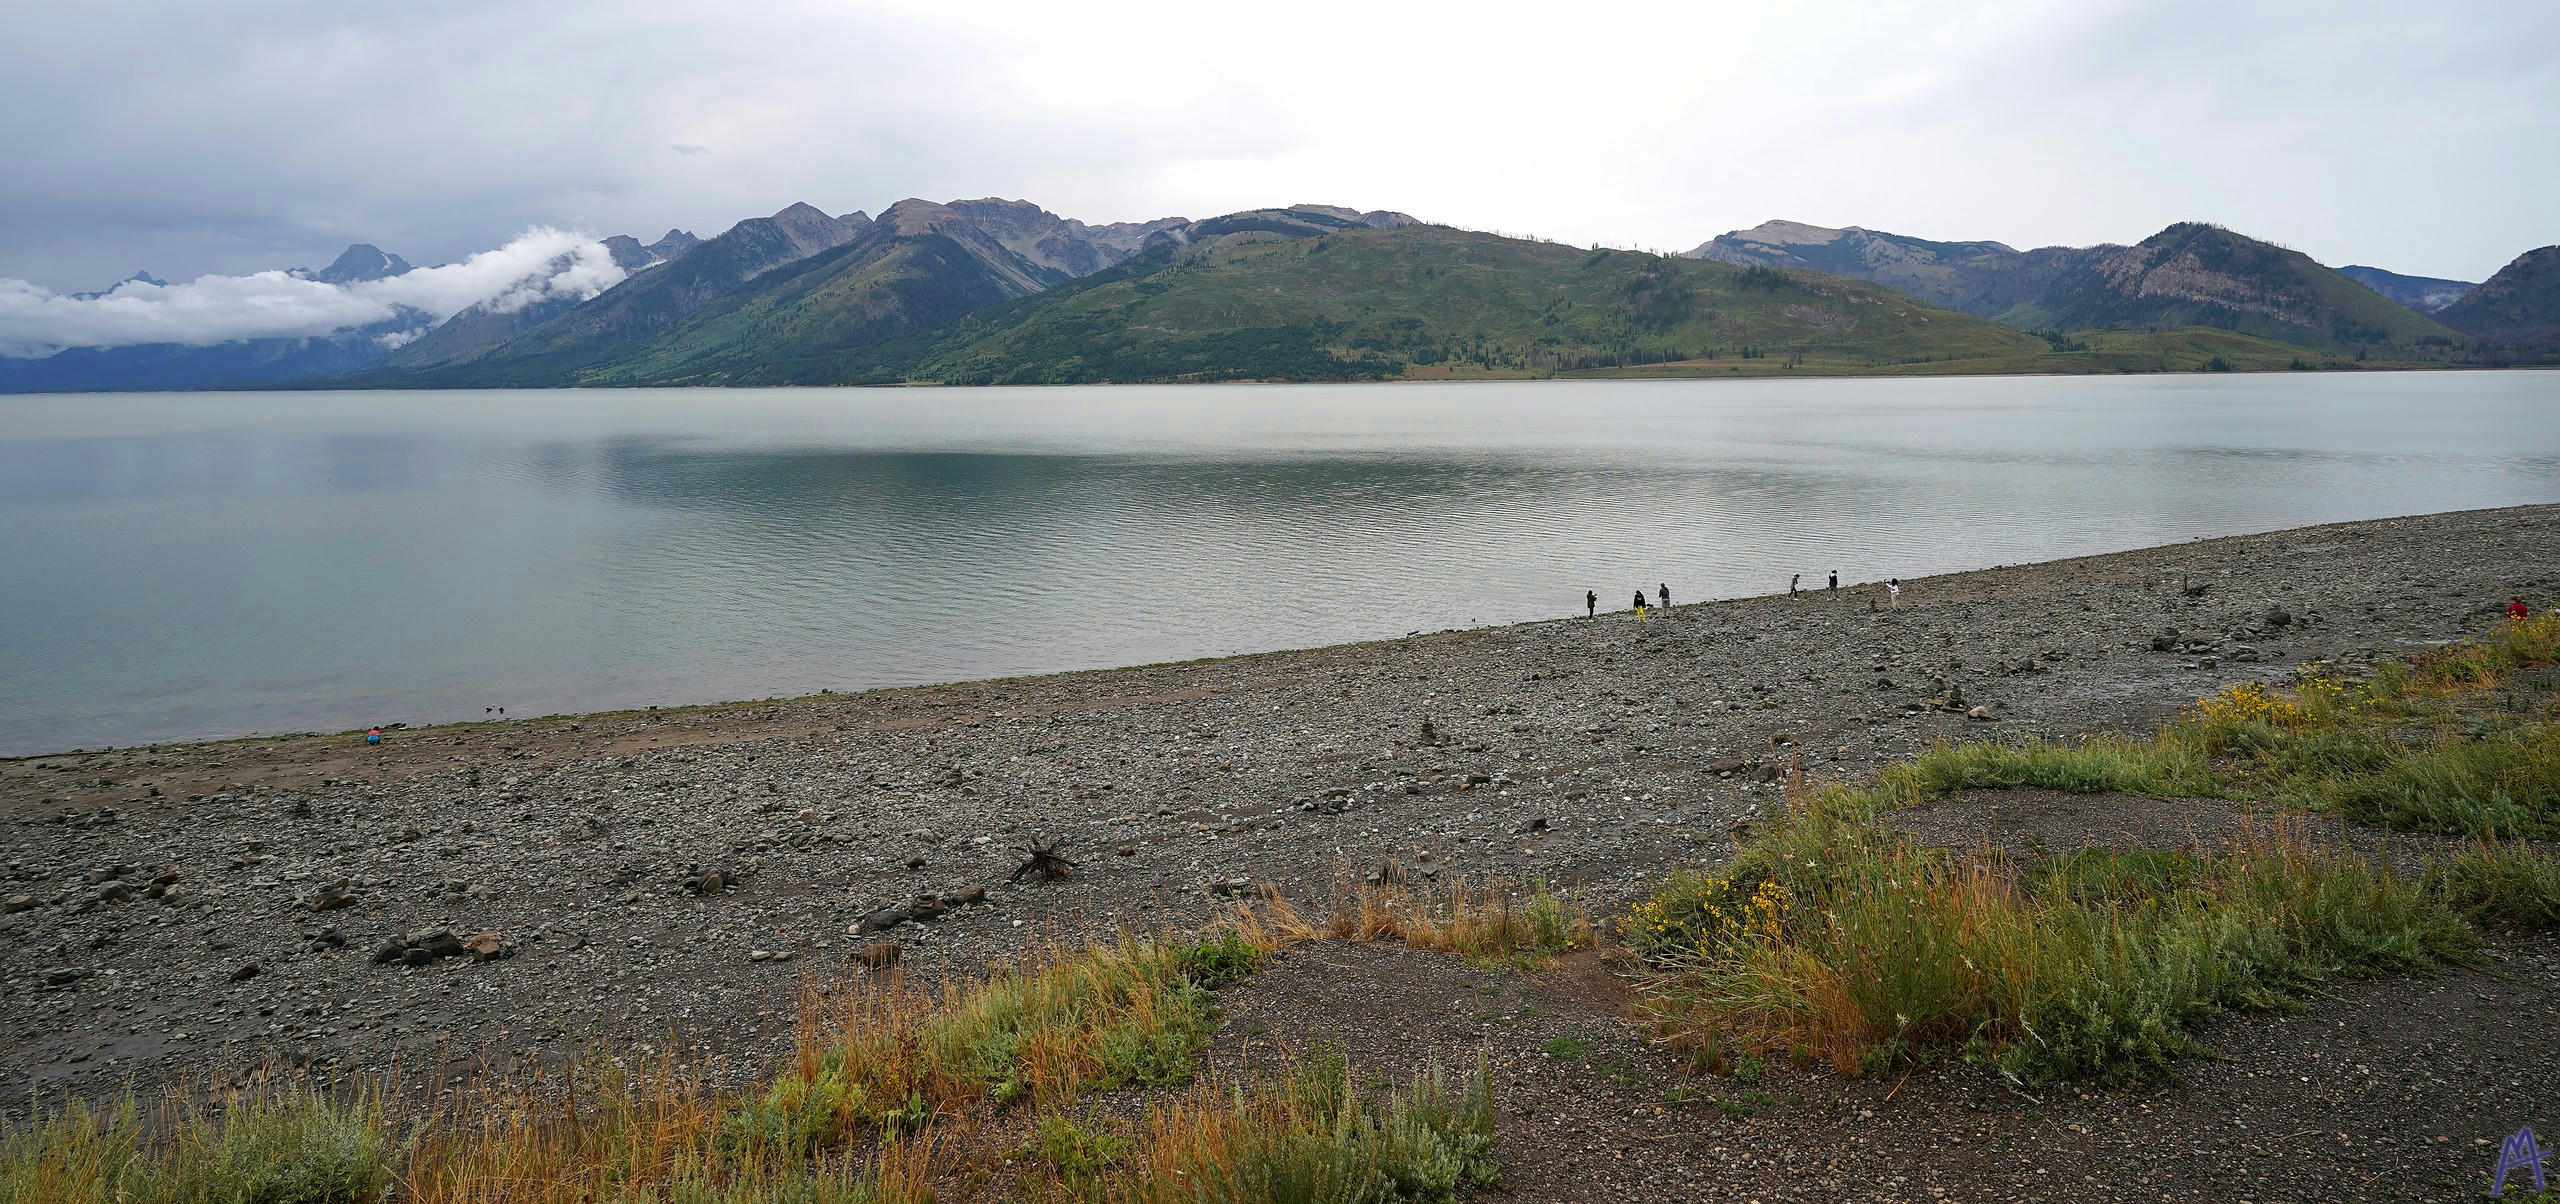 Lake with stony beach at Grand Teton